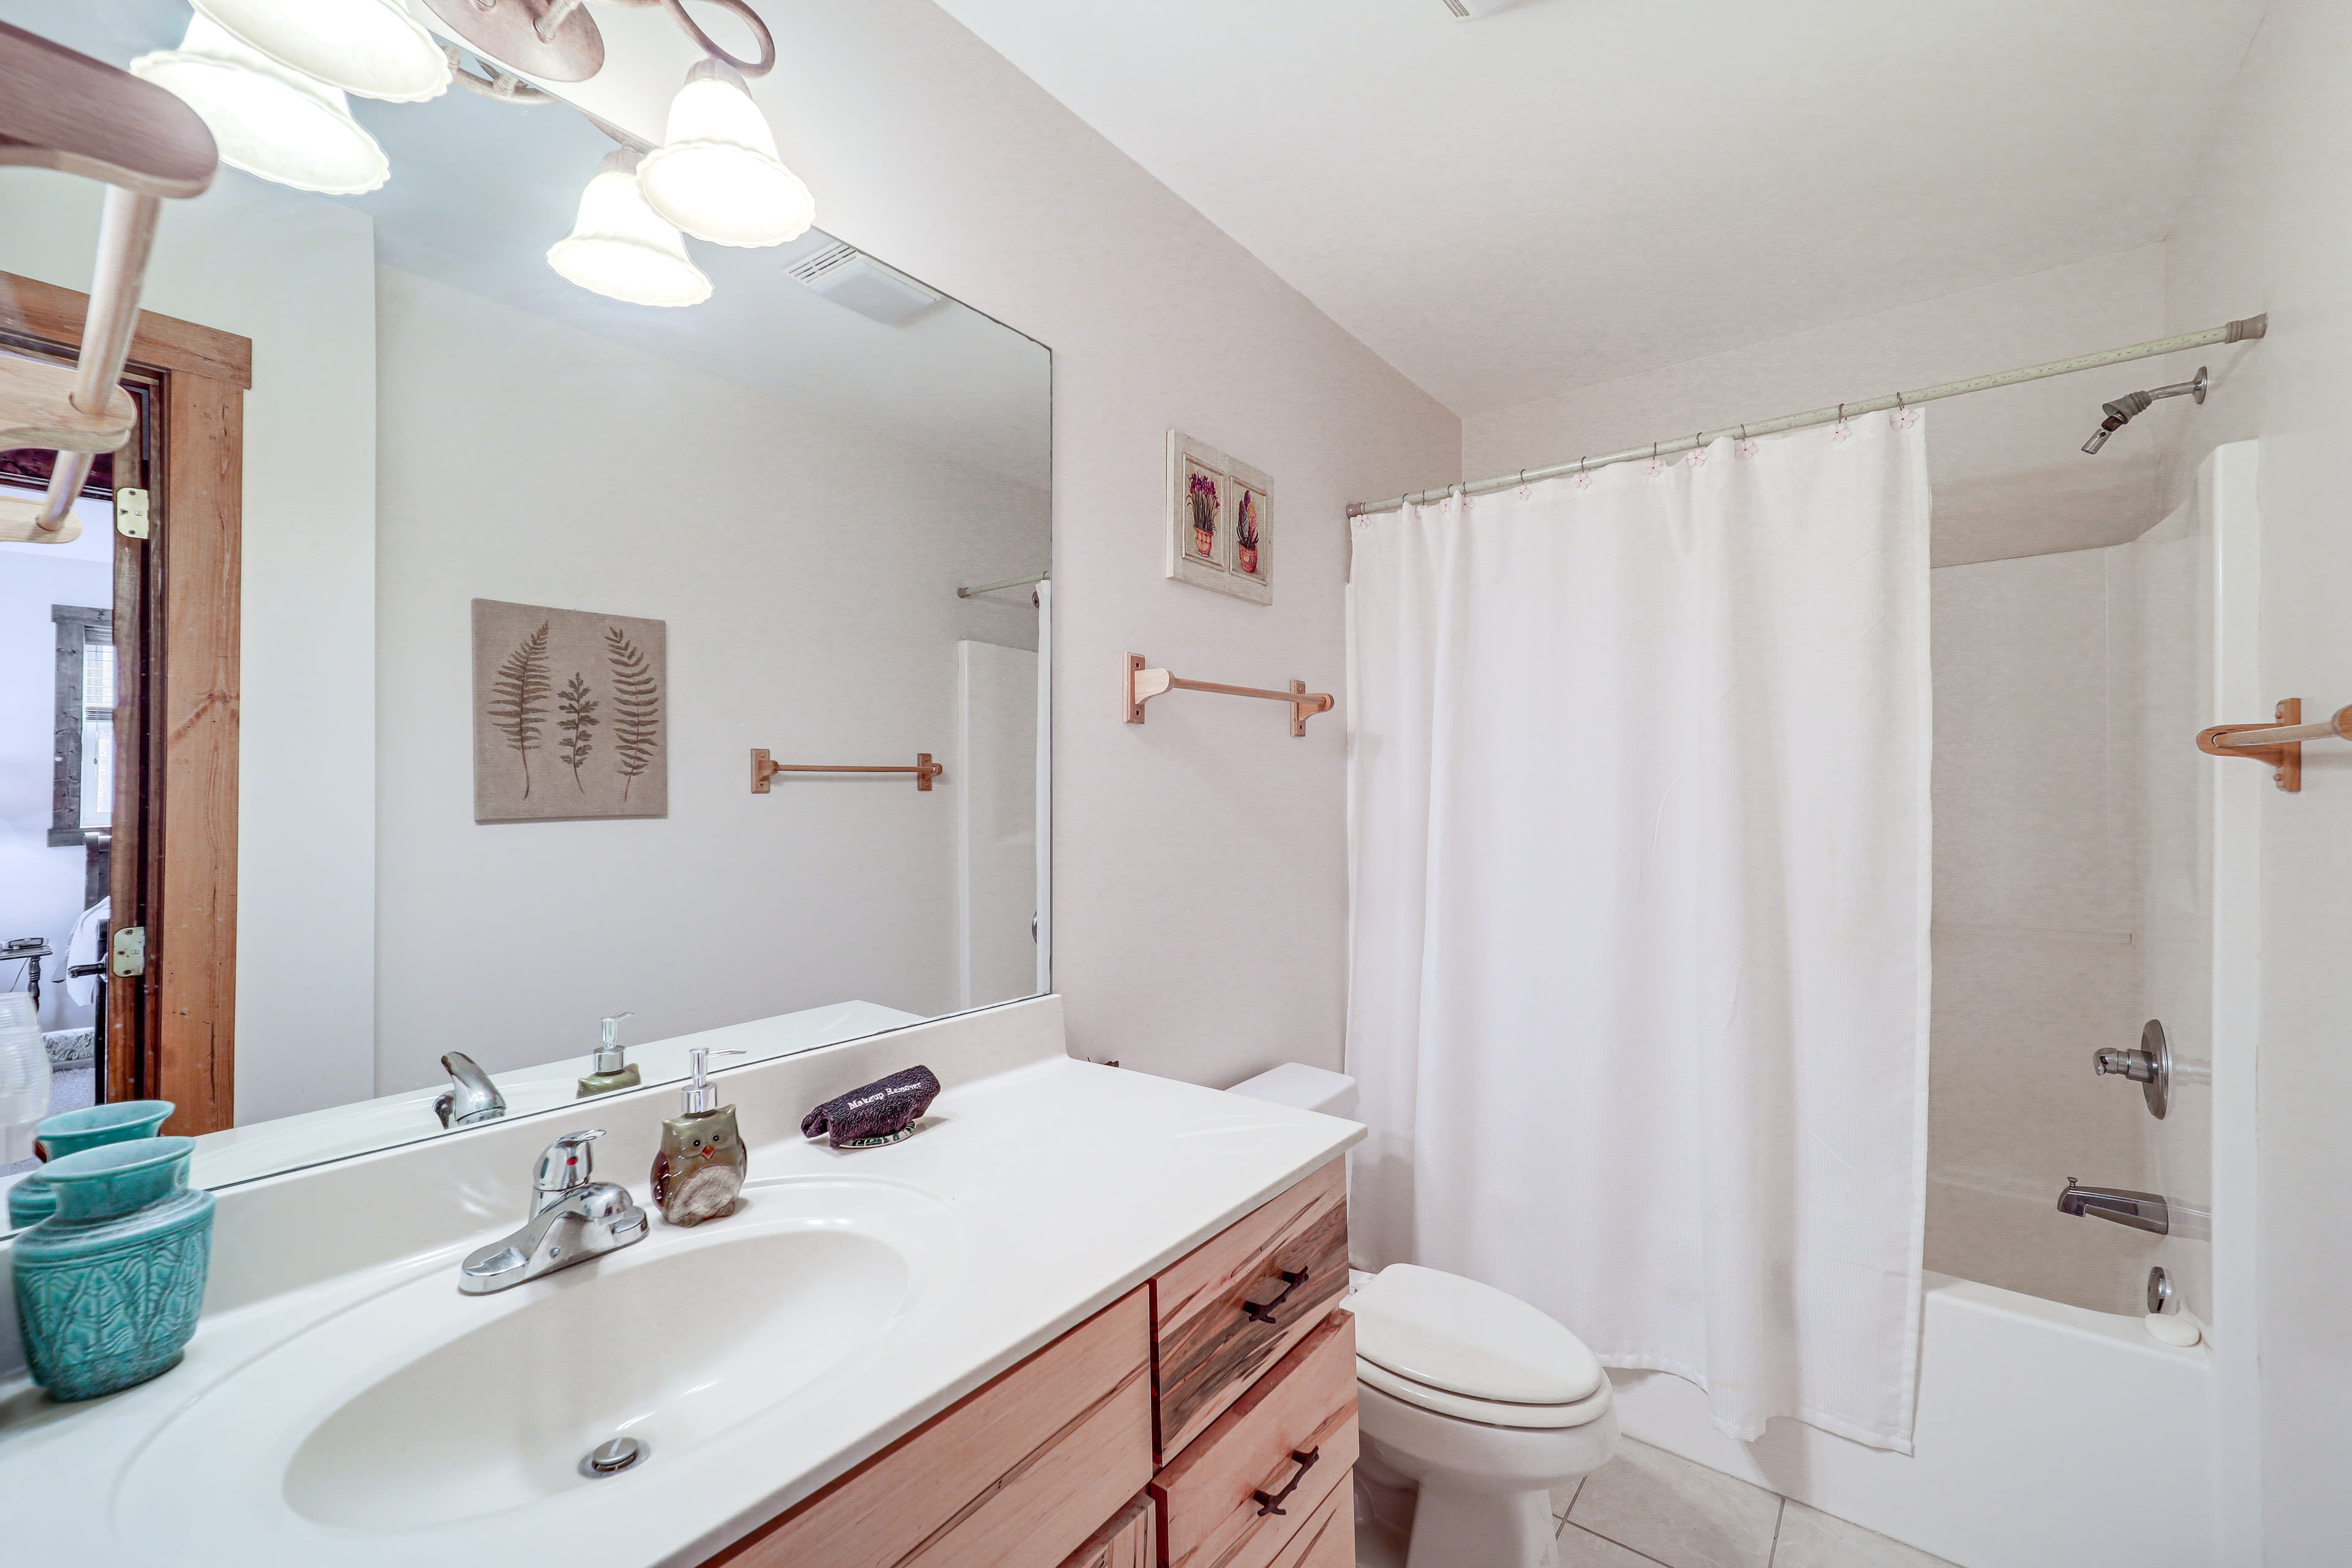 Full Bathroom | 1st Floor | Shower/Tub Combo